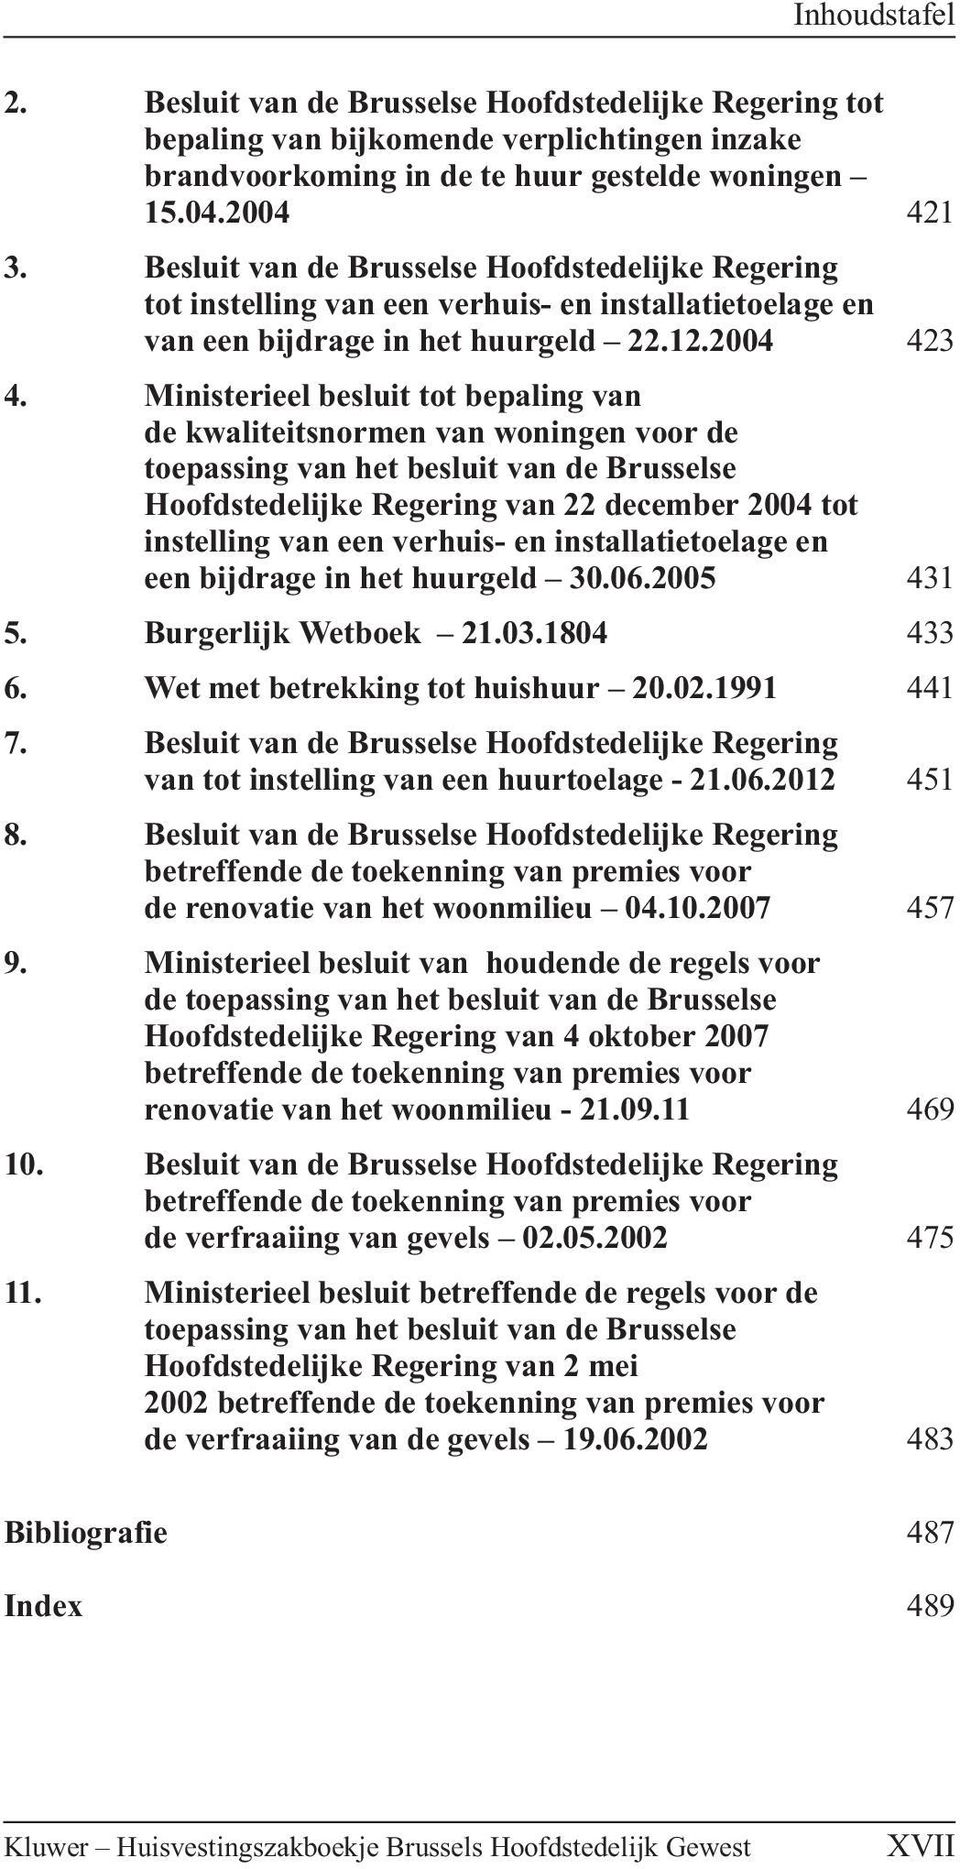 Ministerieel besluit tot bepaling van de kwaliteitsnormen van woningen voor de toepassing van het besluit van de Brusselse Hoofdstedelijke Regering van 22 december 2004 tot instelling van een